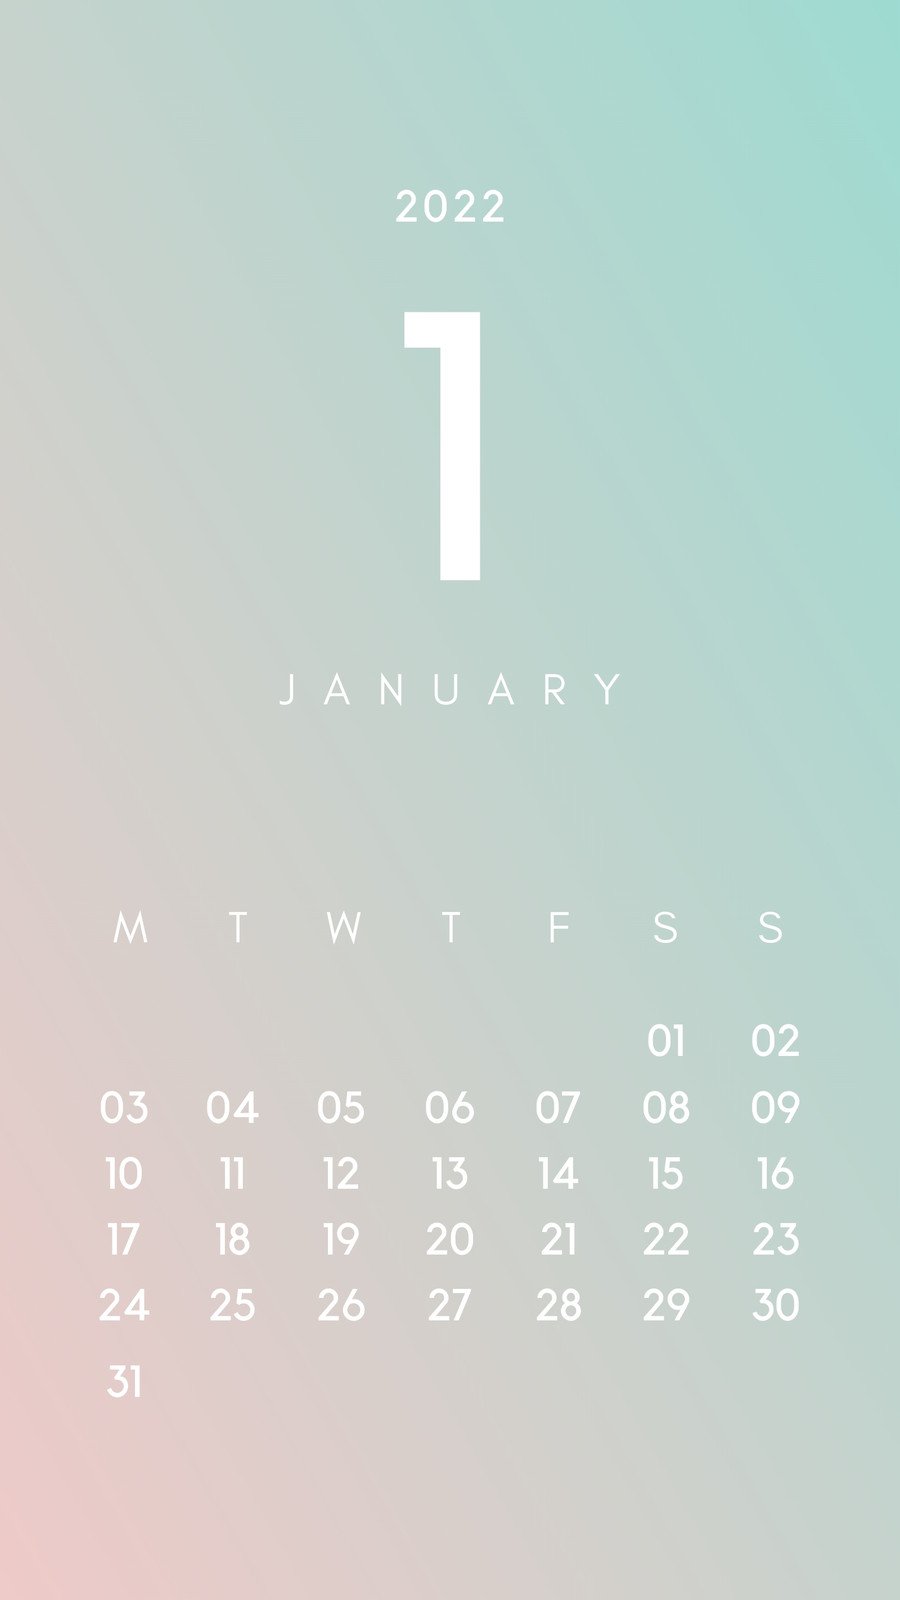 月間カレンダーテンプレートでおしゃれなマンスリーカレンダーデザインを無料で作成 Canva